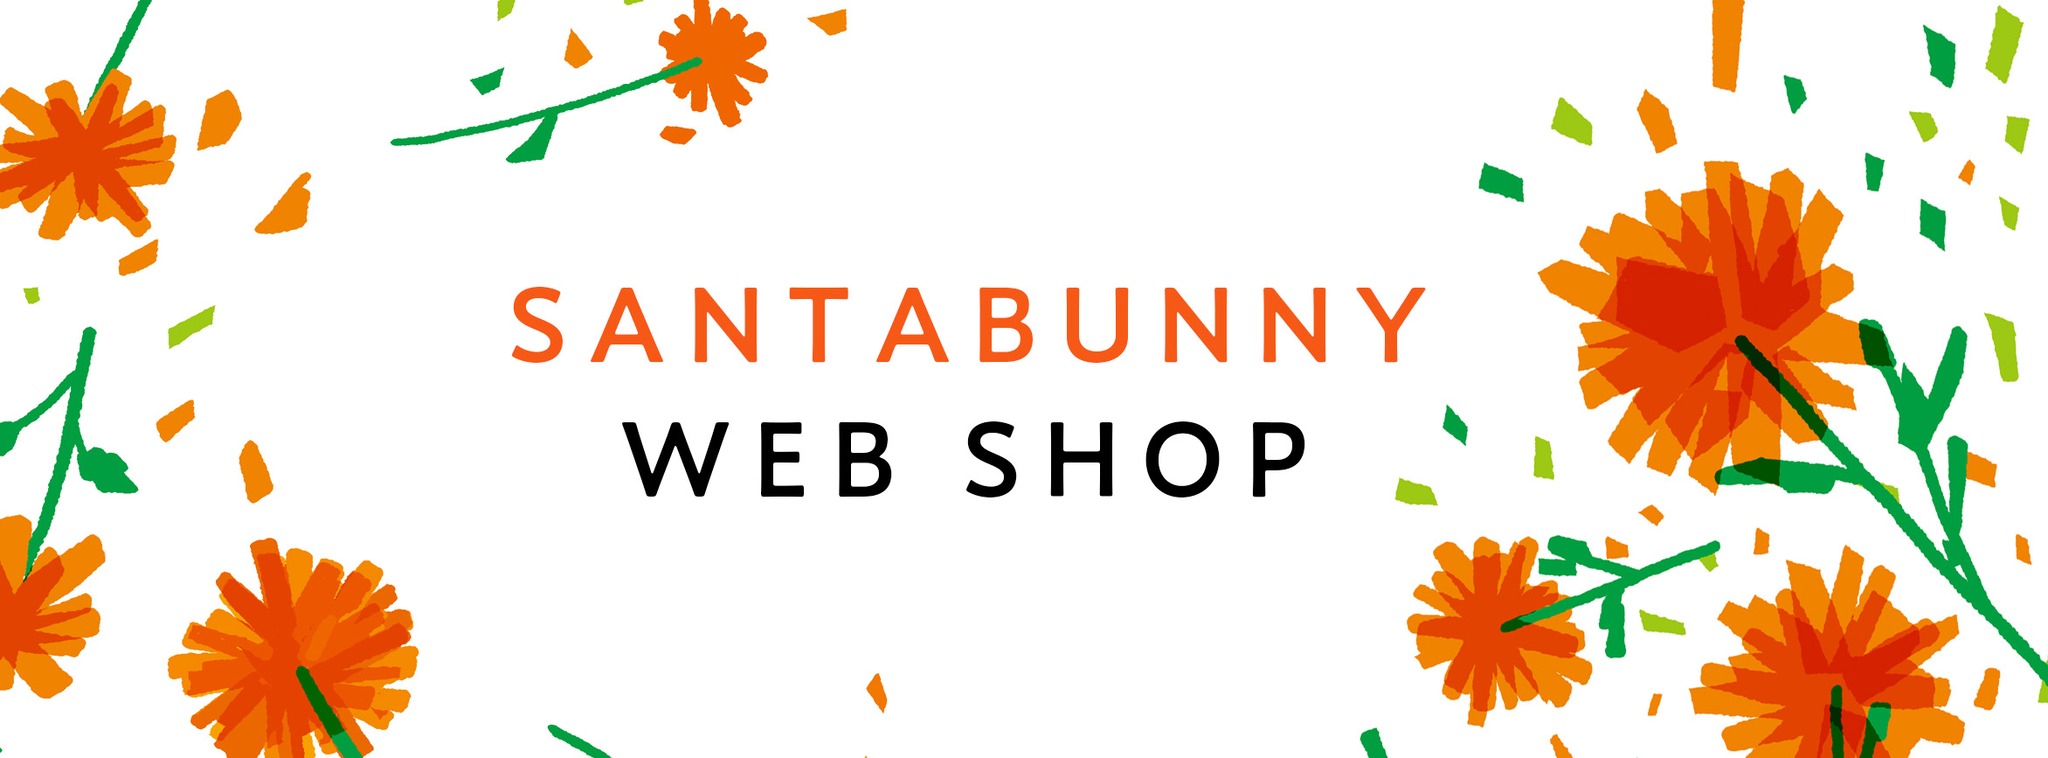 SANTABUNNY WEB SHOP